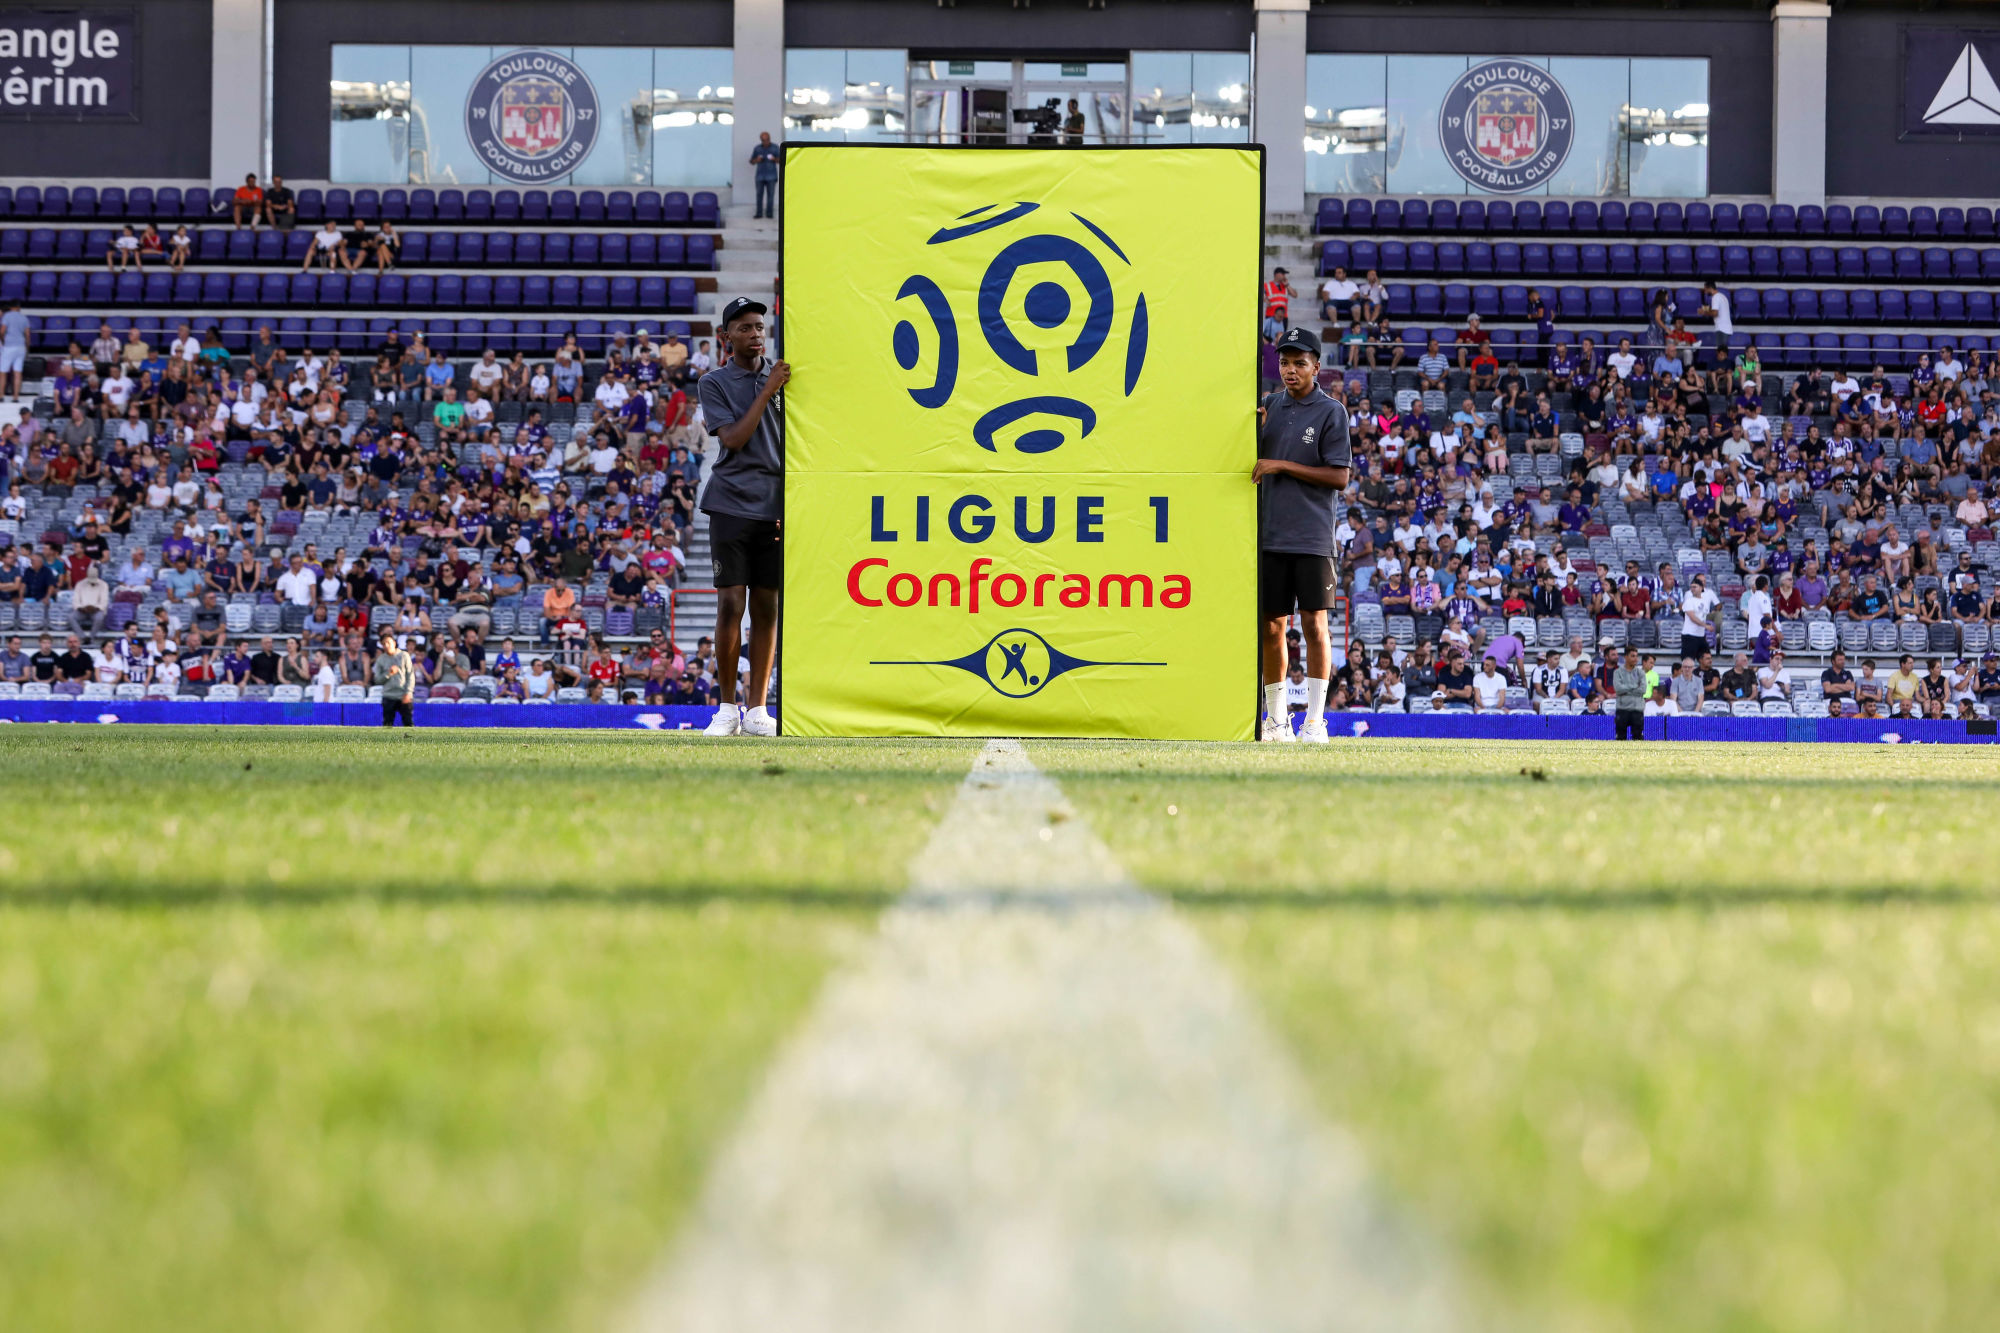 La reprise de la Ligue 1 devrait être une priorité nationale